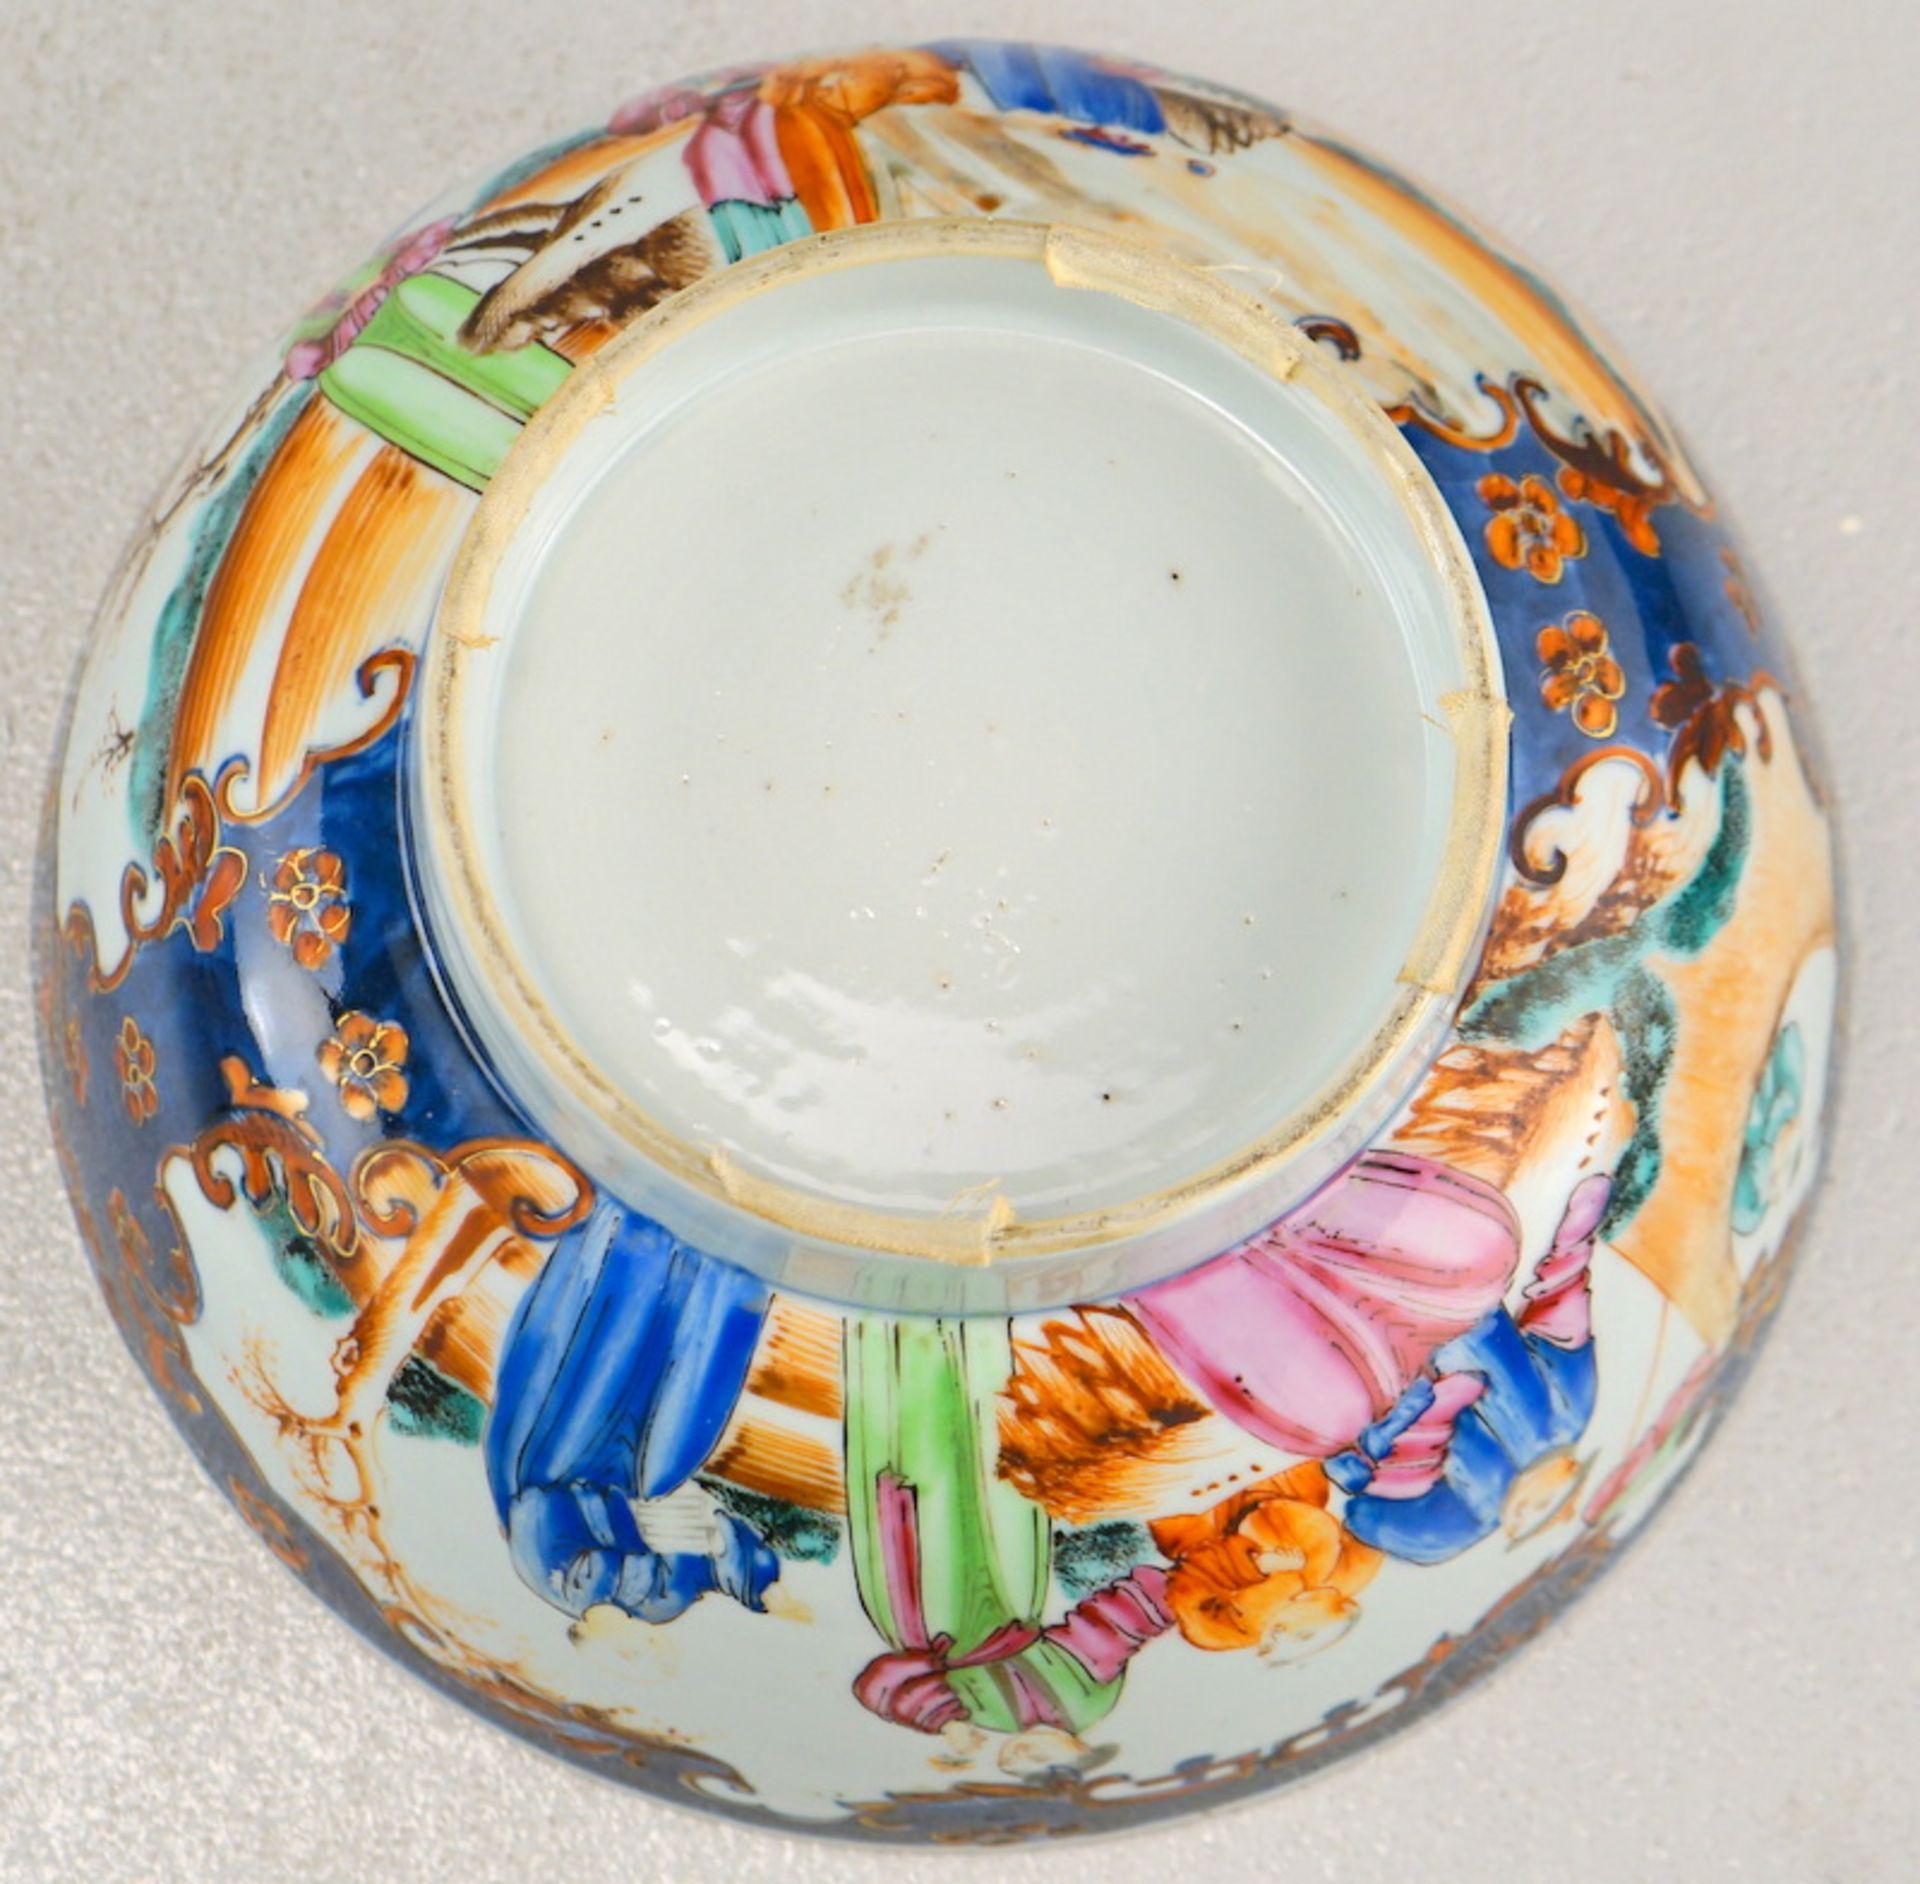 Großer Bowl, Schale Mandarin Dekor ca. 1780-1820, China - Image 2 of 4